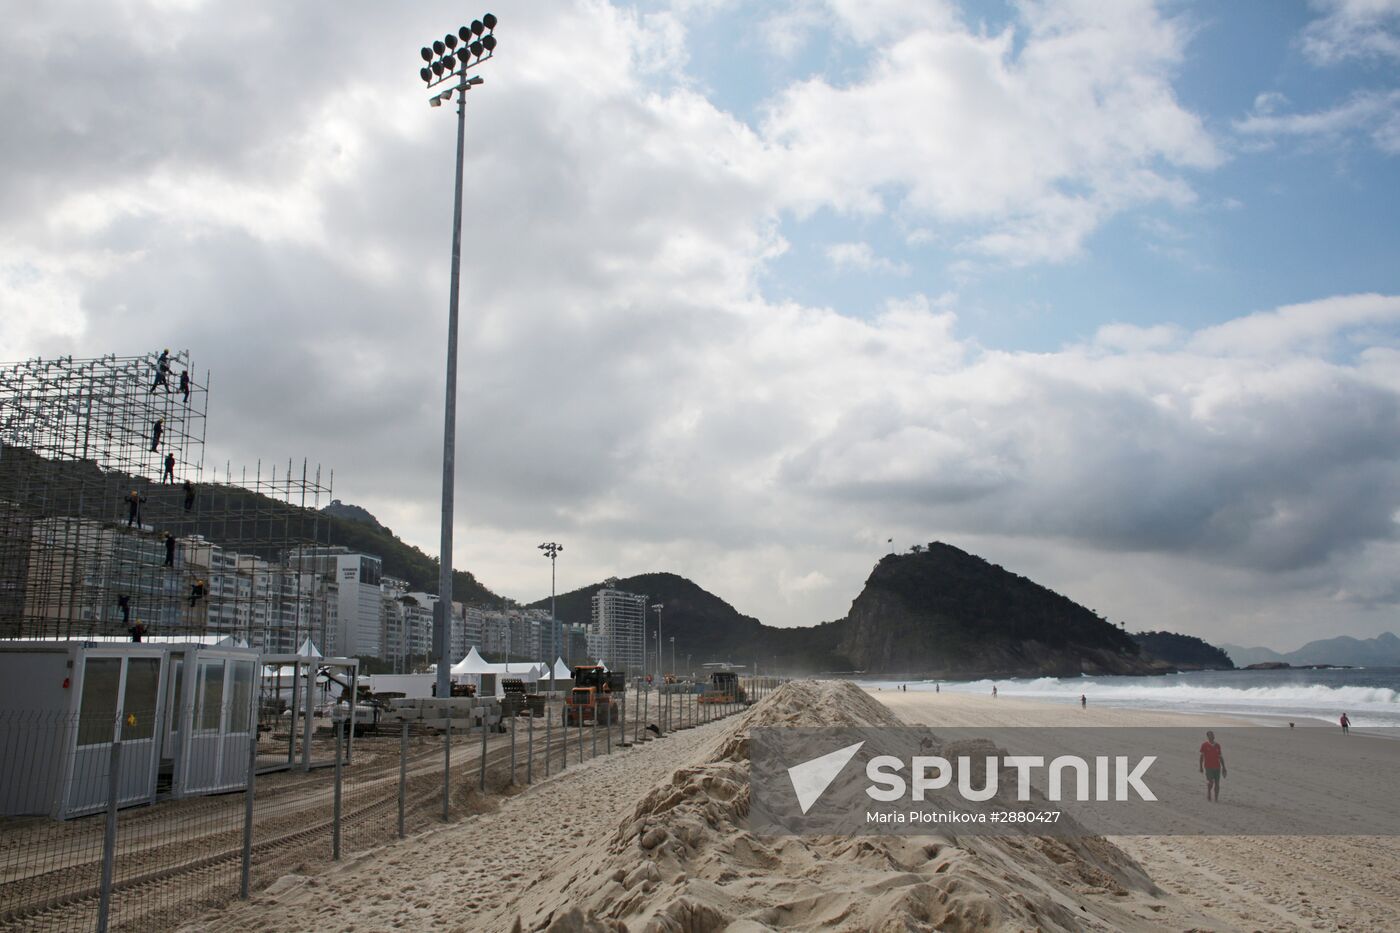 Rio de Janeiro readies for Olympics